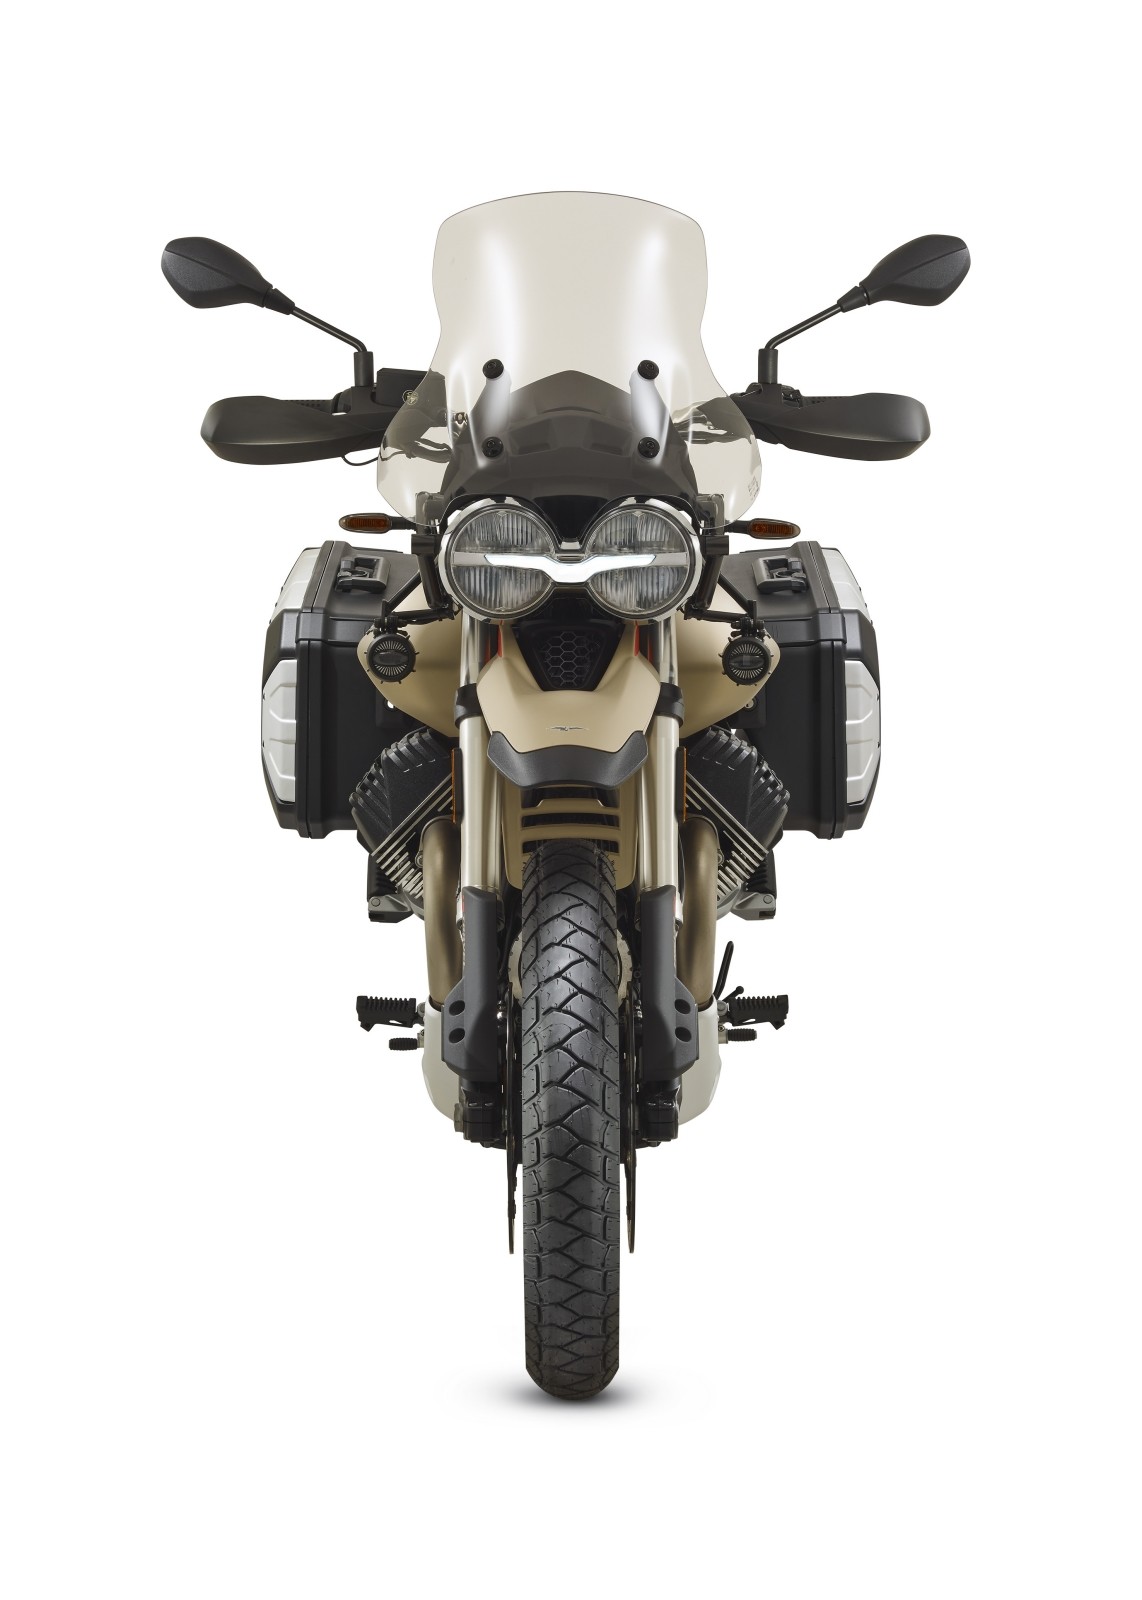 Moto Guzzi lança aventureira com toques retrô V85 TT Travel